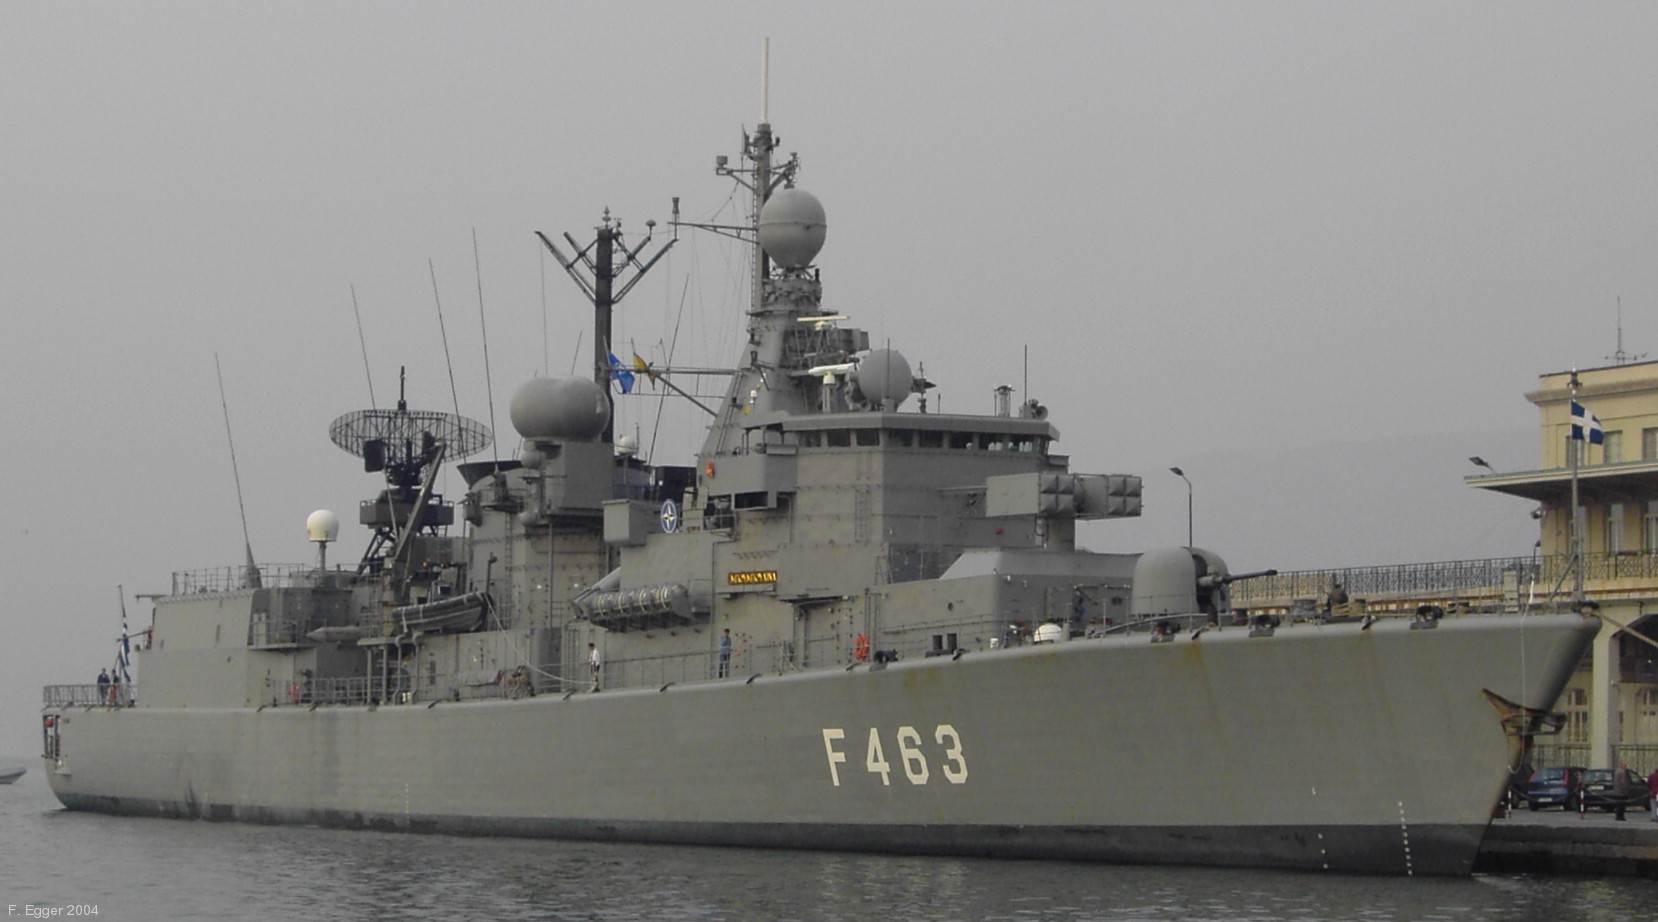 f 463 hs bouboulina elli kortenaer class frigate hellenic navy greece 10